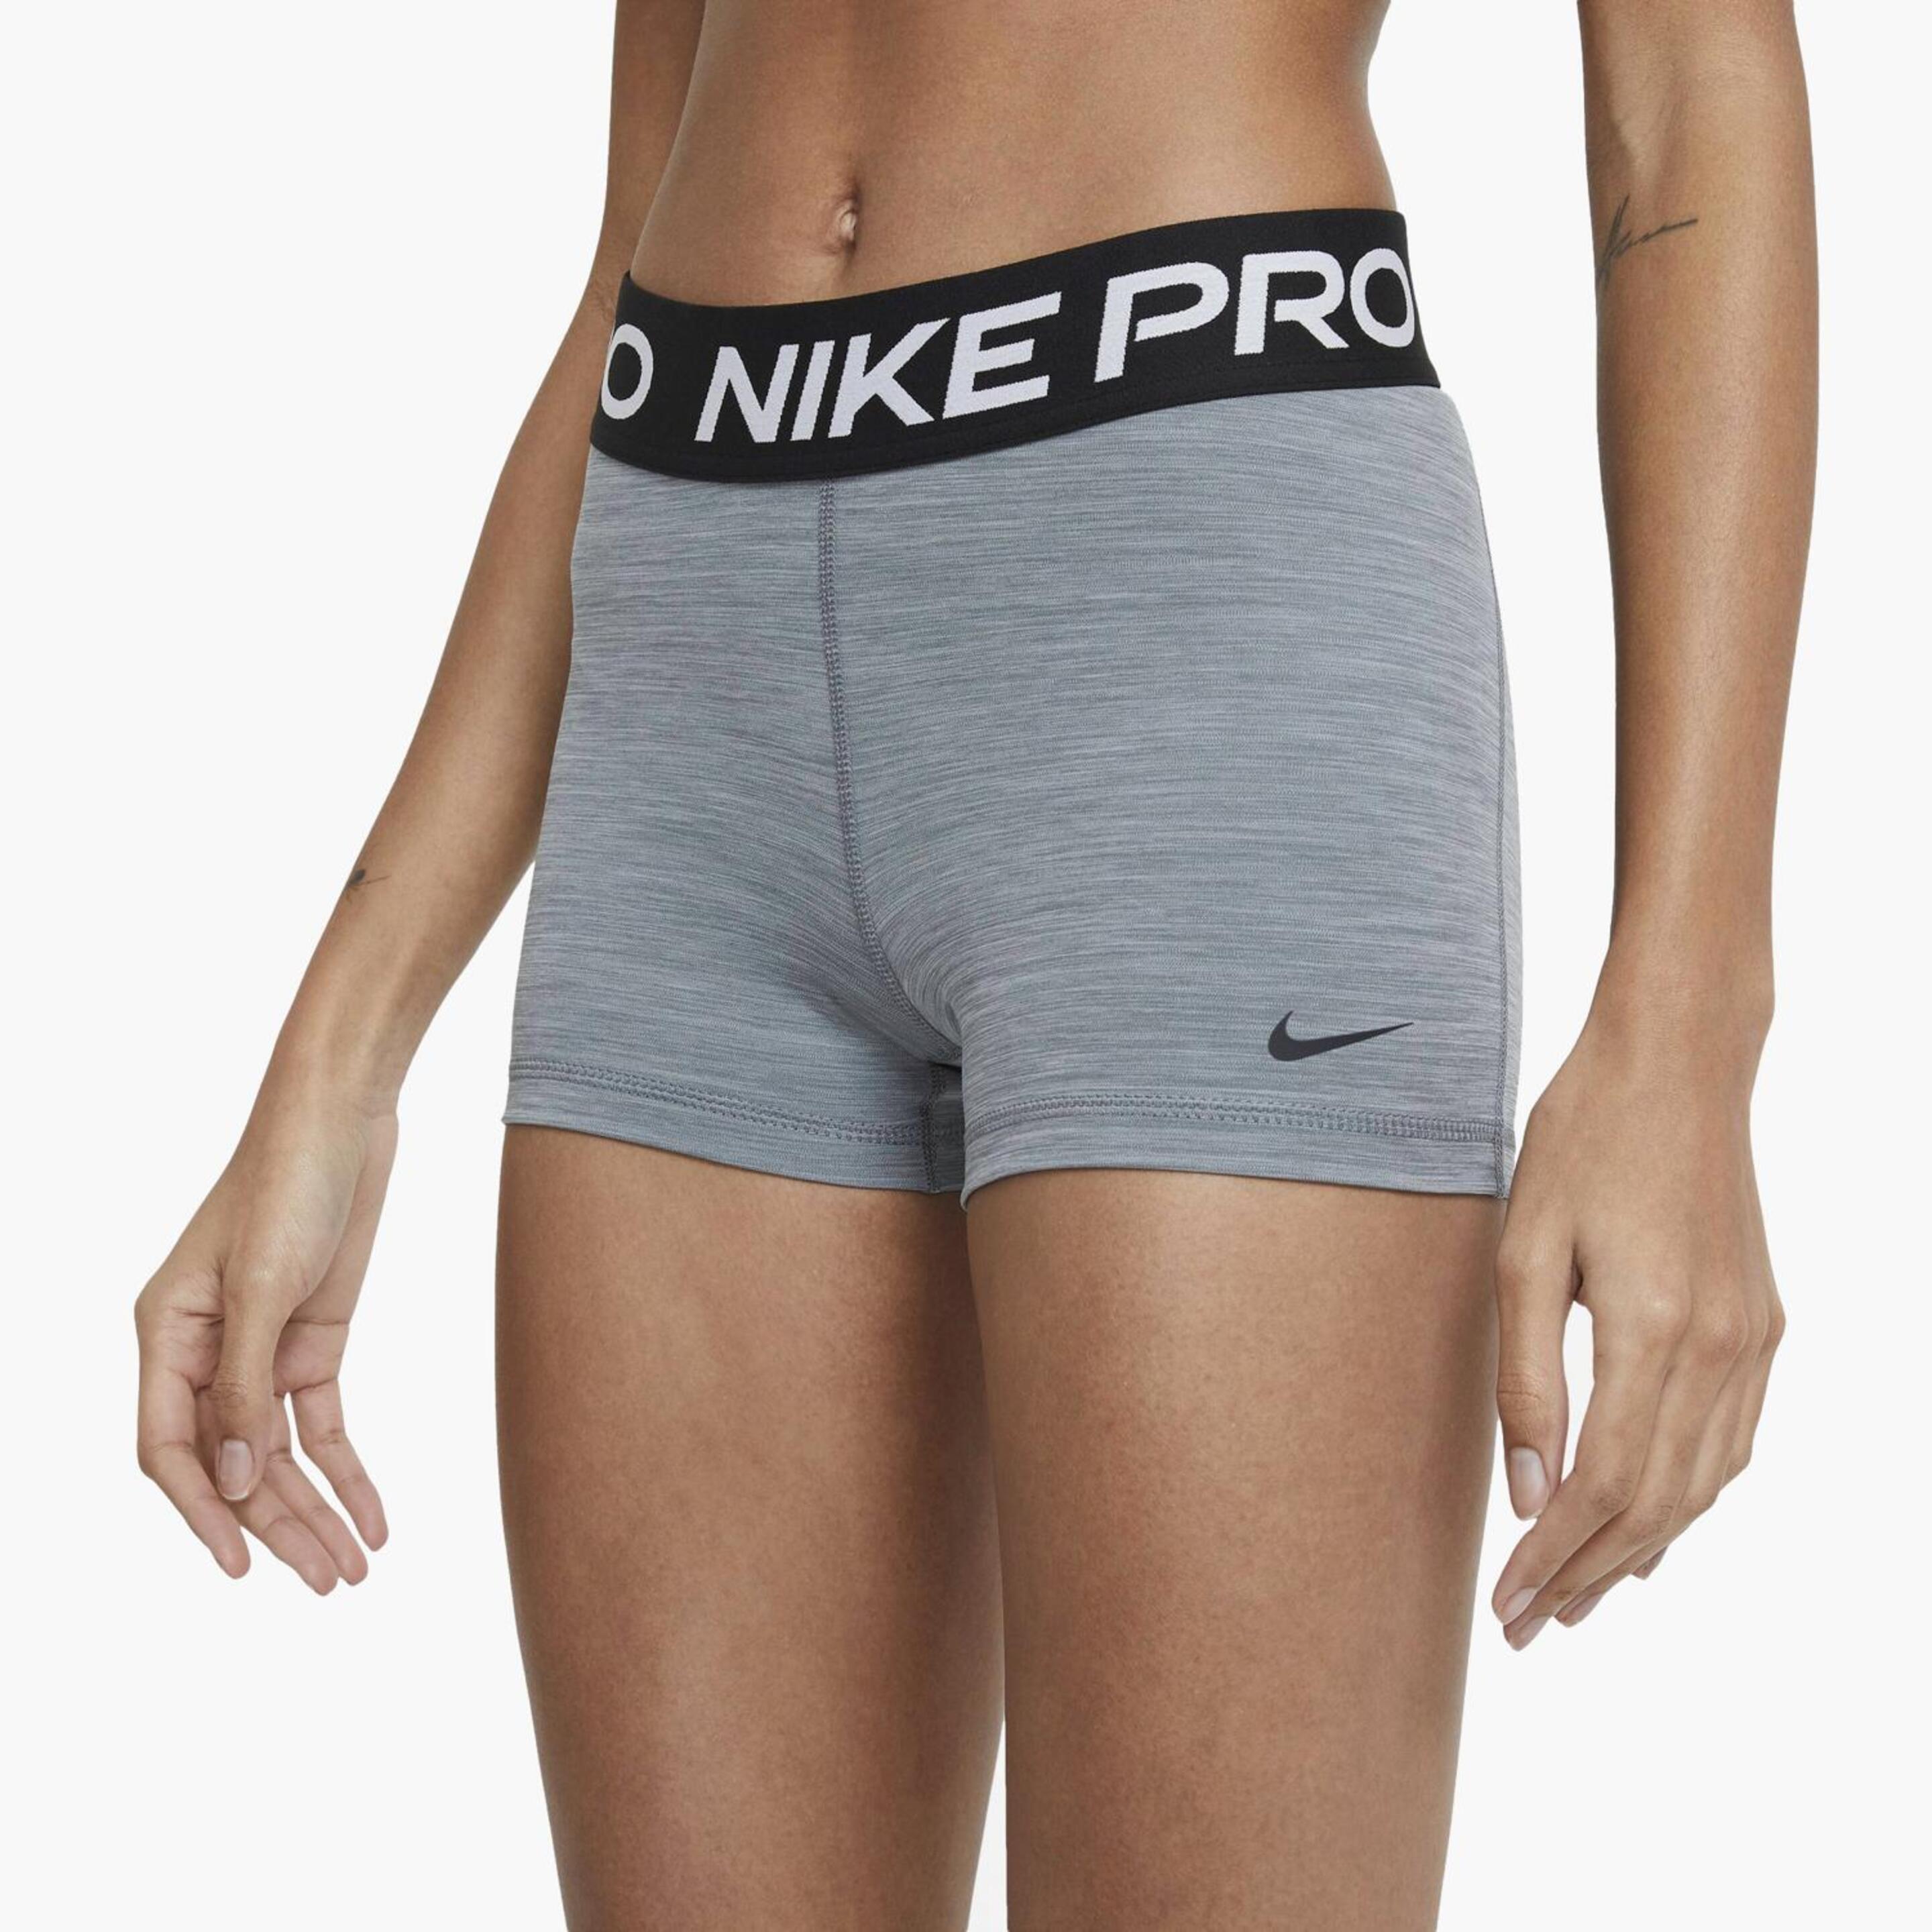 Nike Pro - gris - Mallas Fitness Cortas Mujer